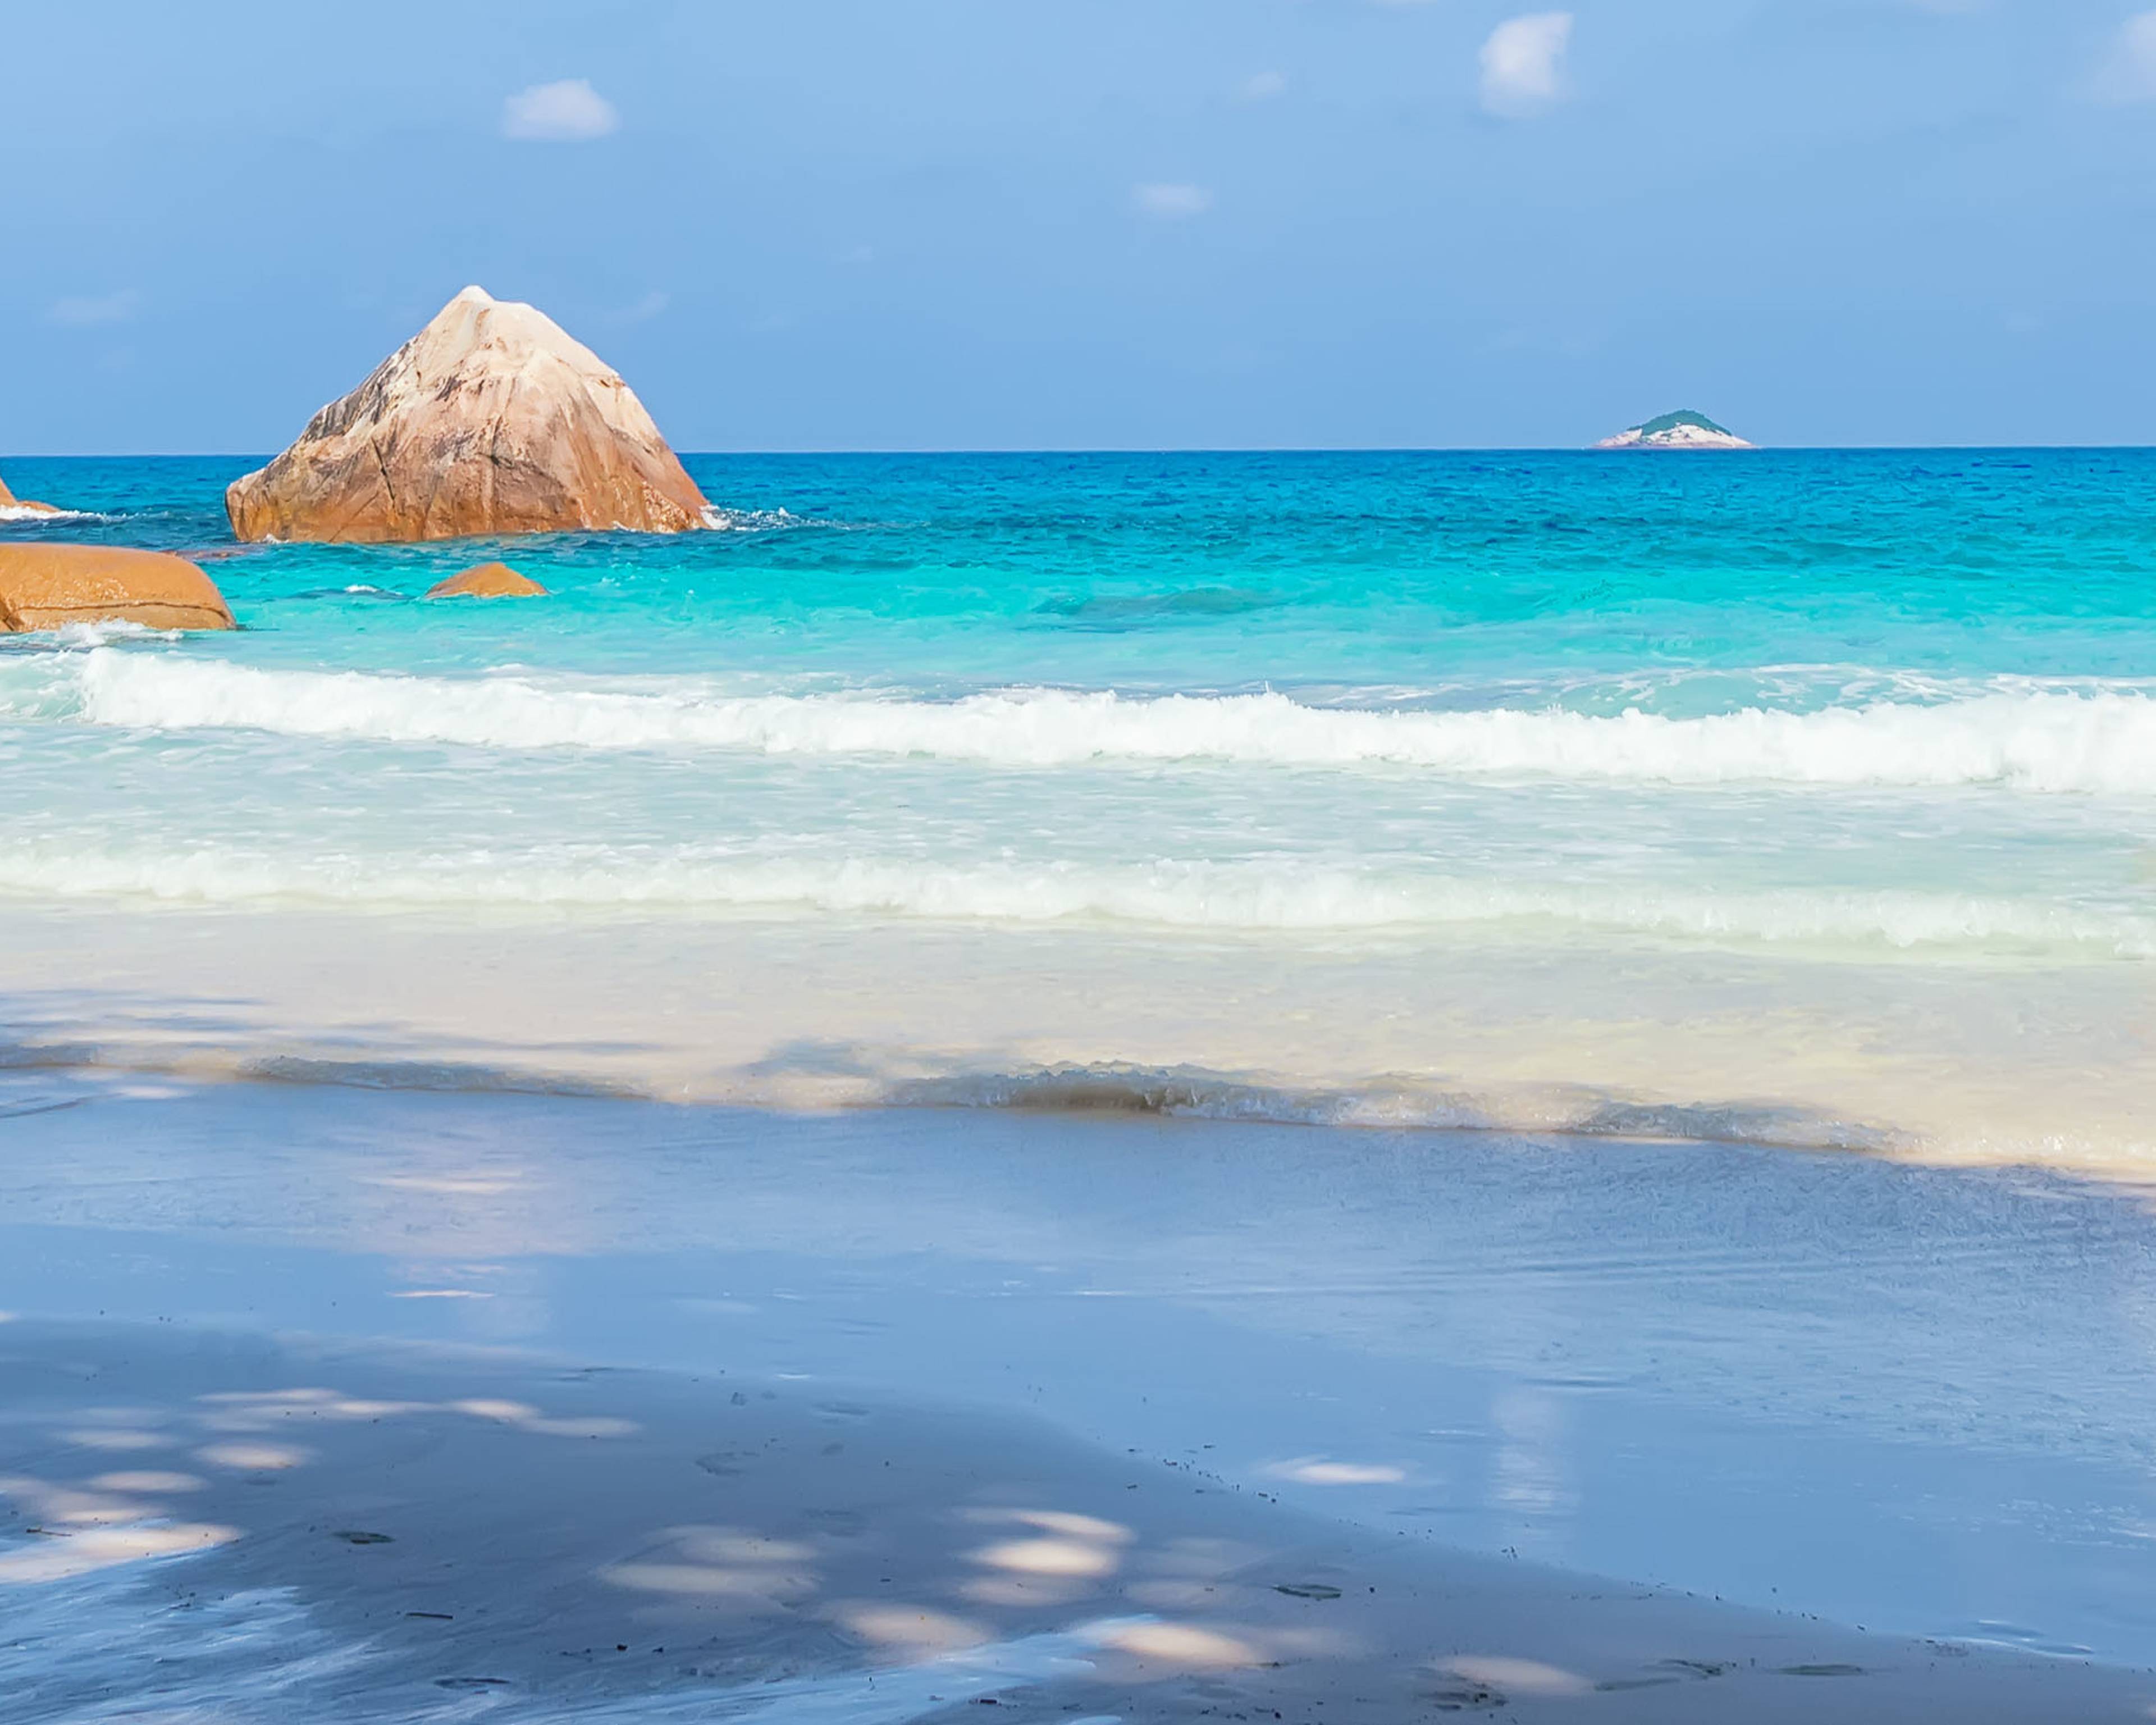 Viaggi alle Seychelles in estate - Viaggi e Tour su Misura